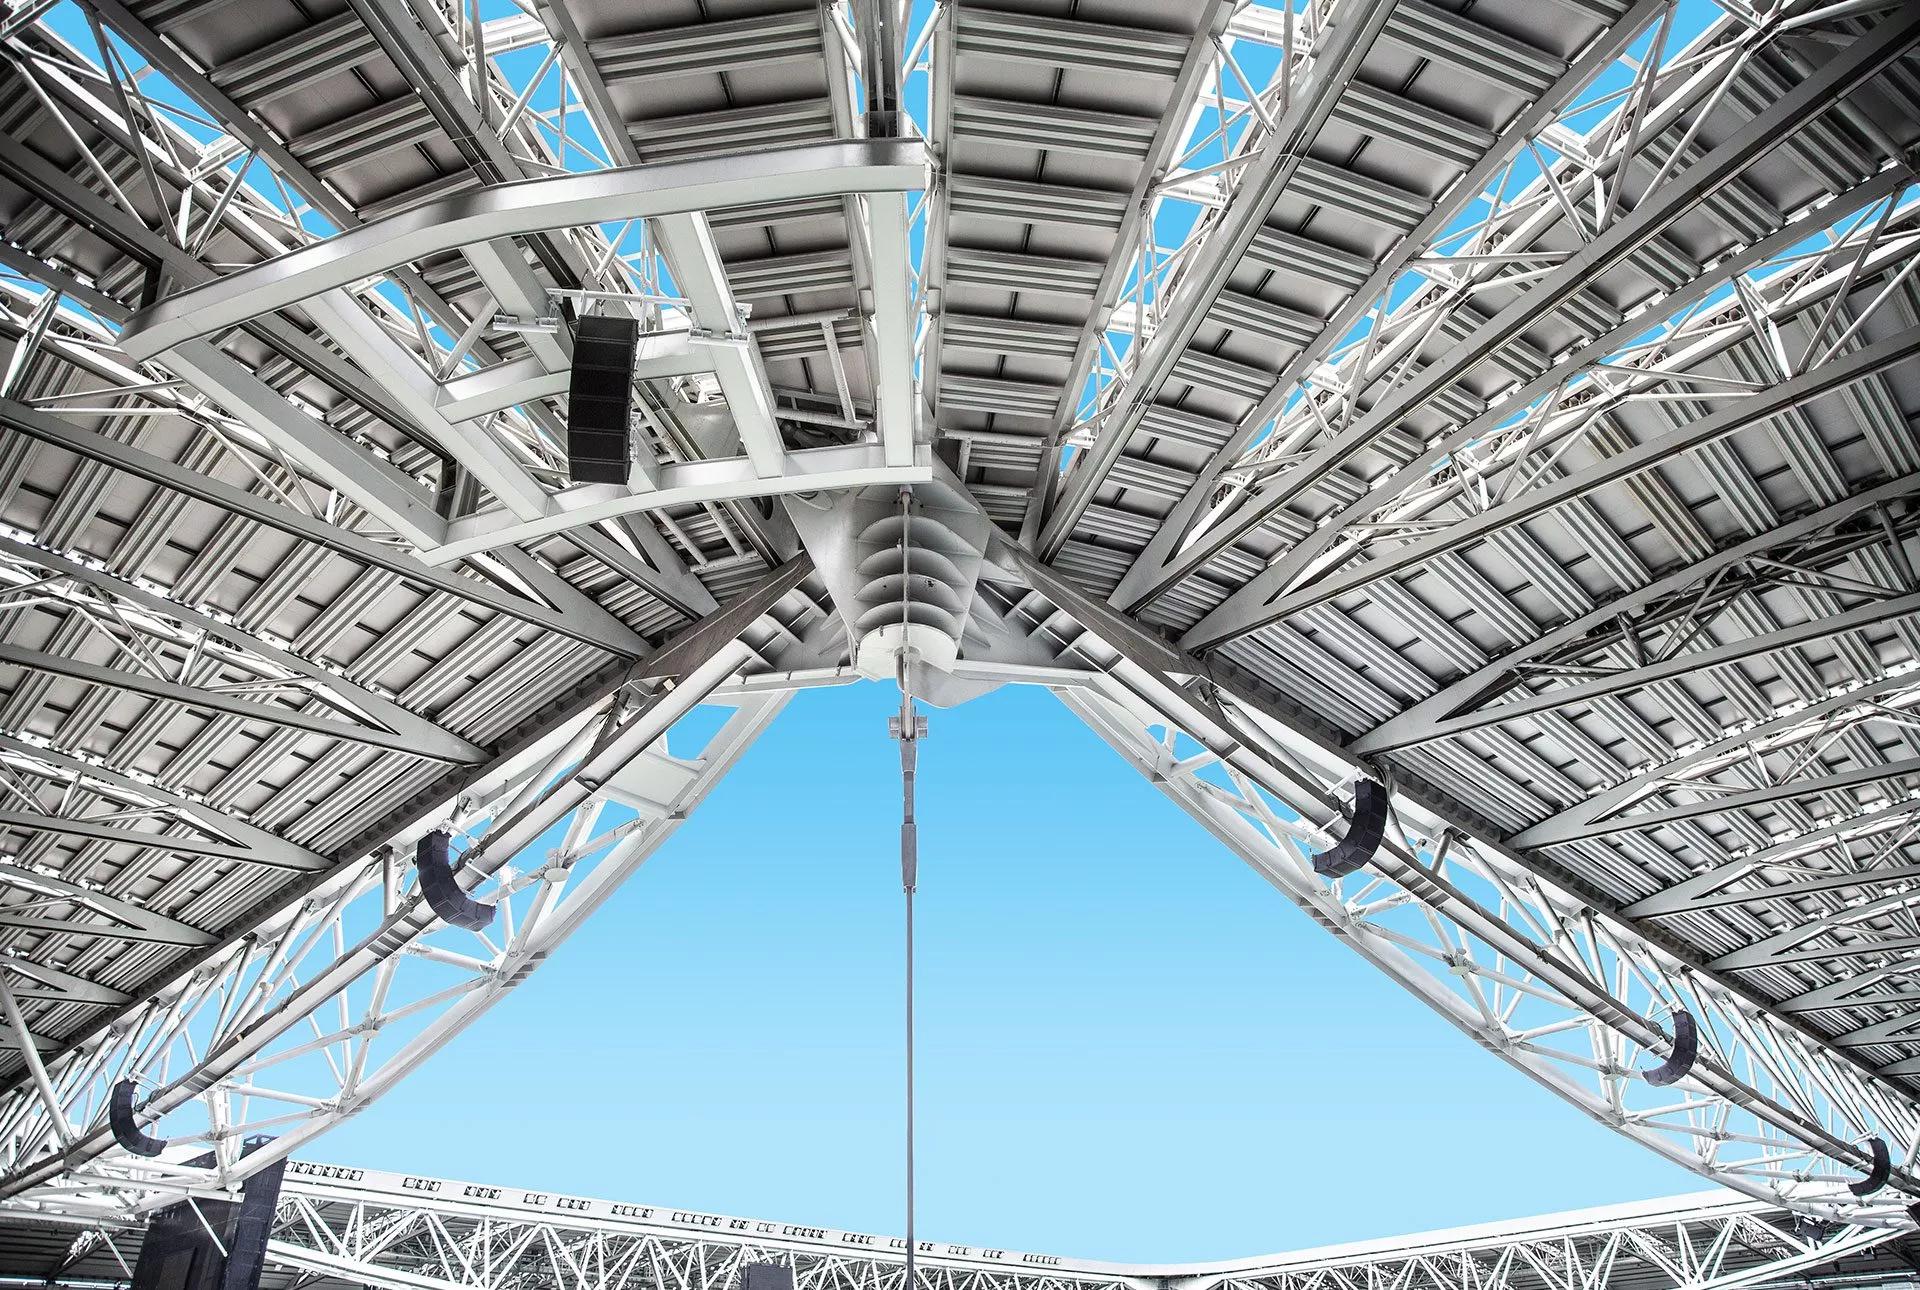 Bose Professionalスピーカーが設置されたアリアンツ・スタジアムの天井